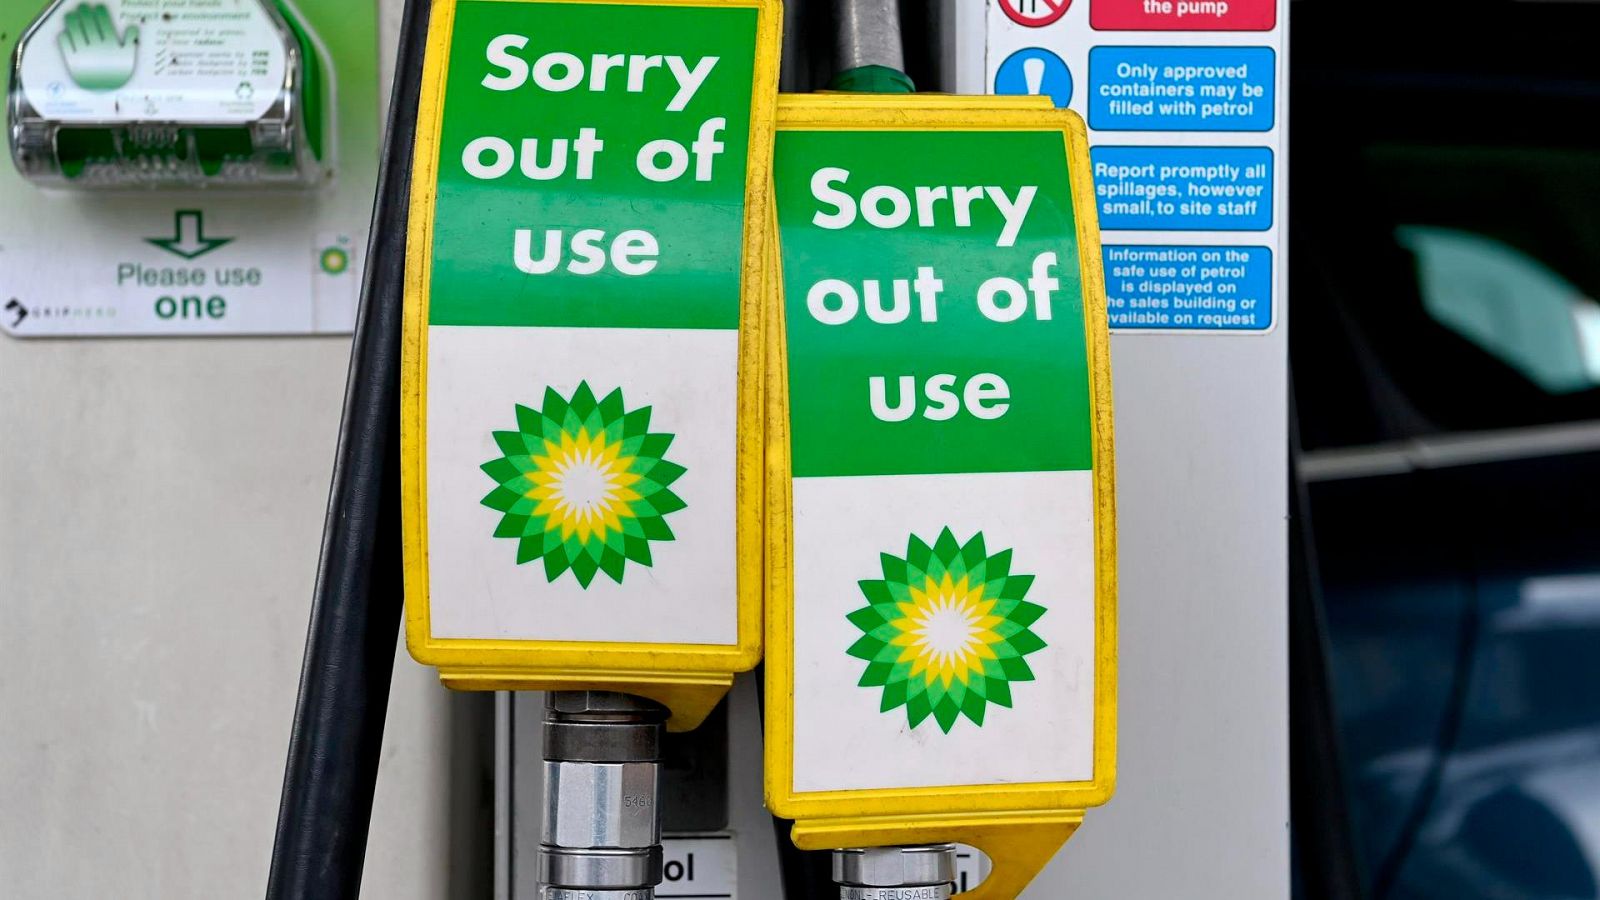 El 84% de las gasolineras tienen problemas de abastecimiento en el Reino Unido